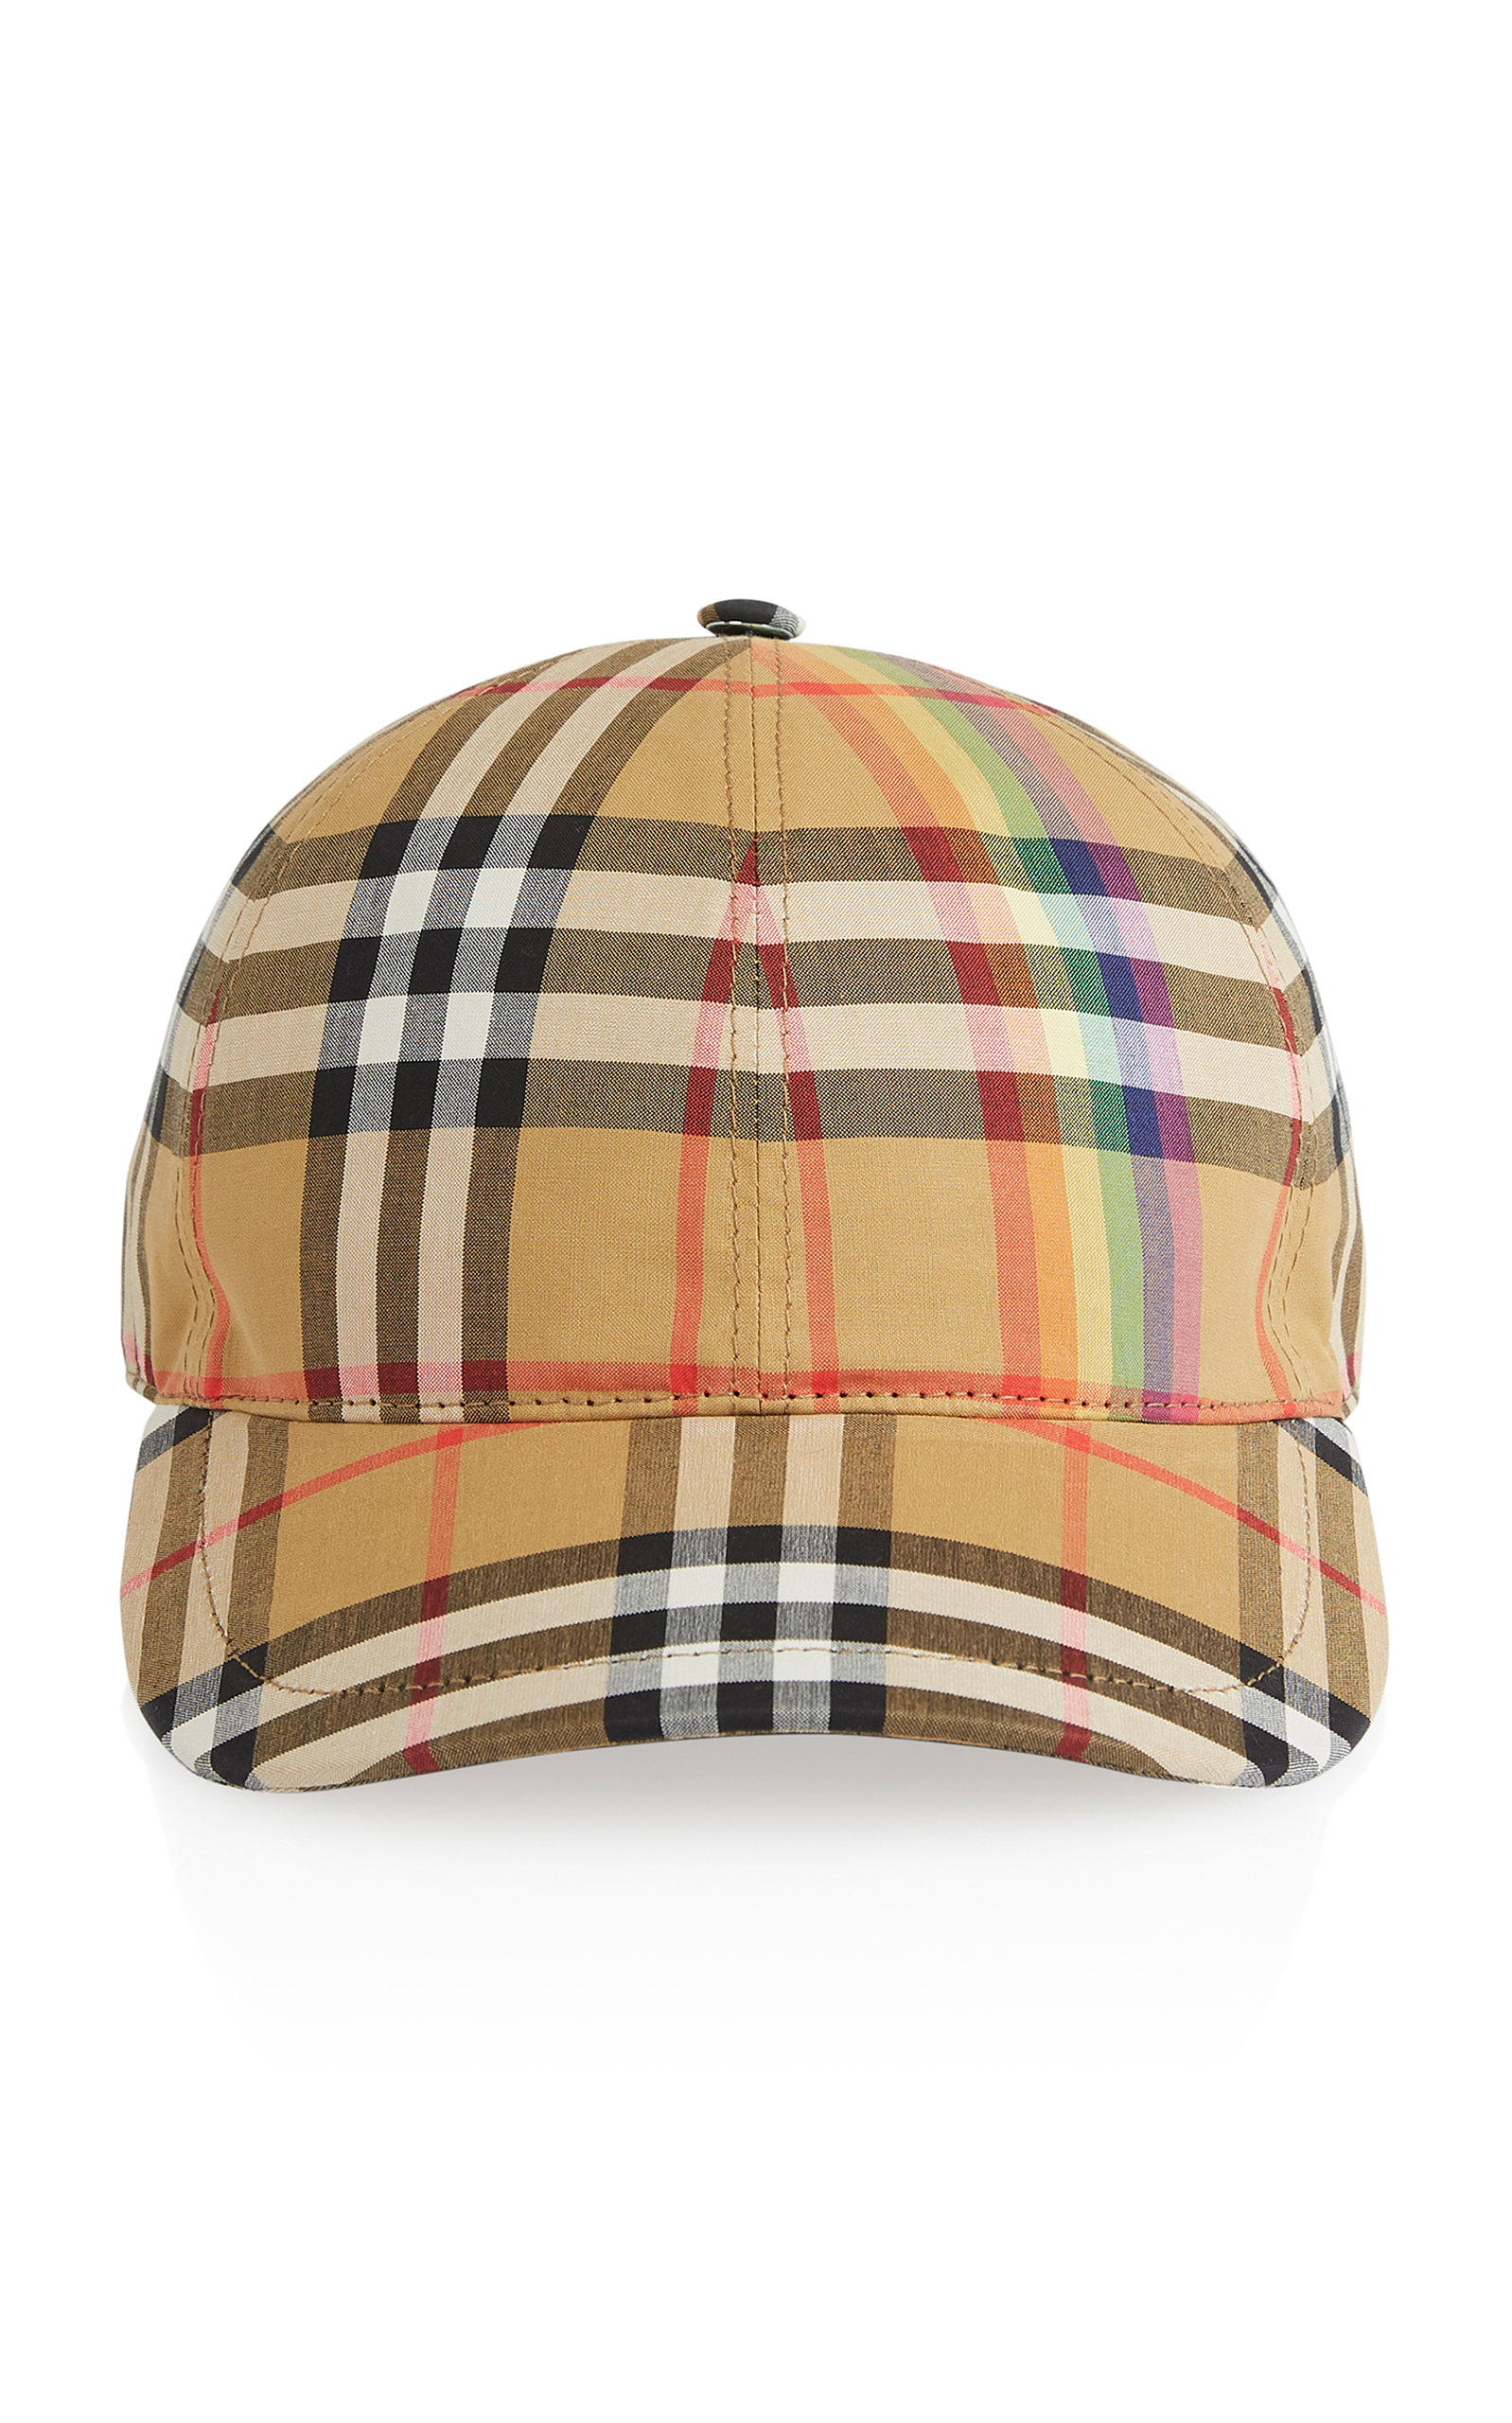 burberry rainbow hat